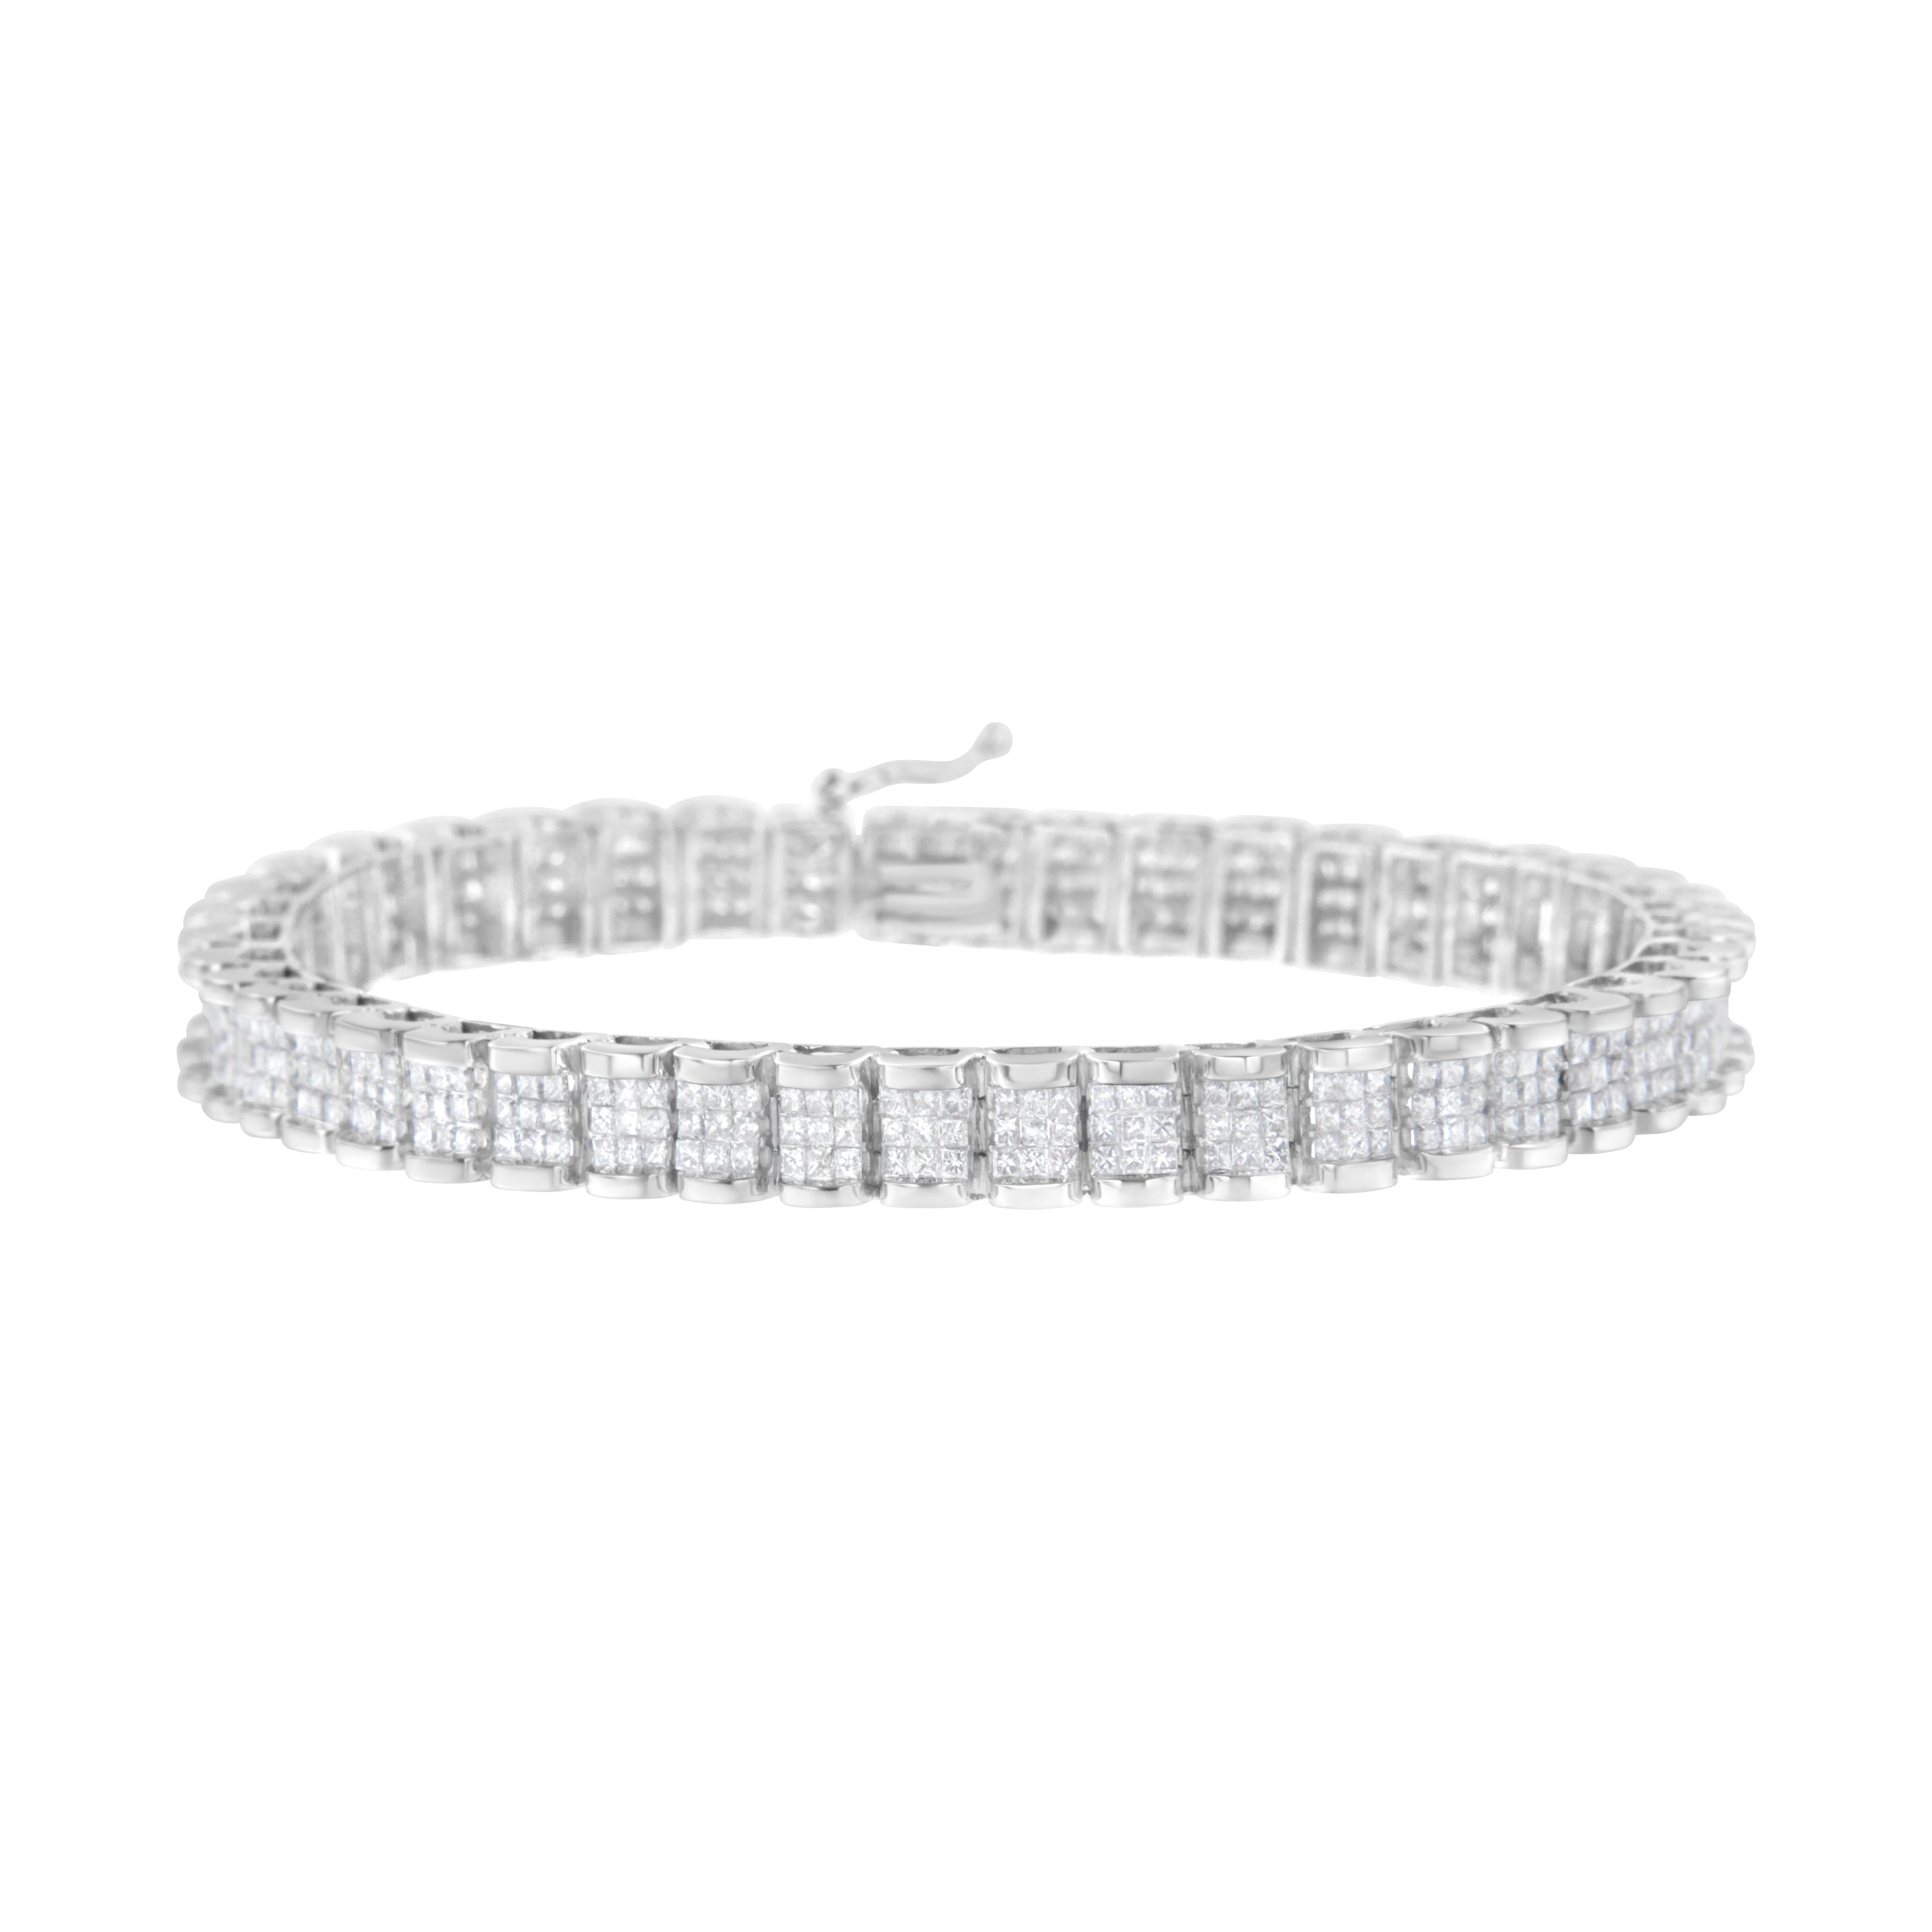 Ce superbe bracelet tennis en or blanc 14k est créé avec 5 ct de magnifiques diamants naturels. Des maillons rectangulaires, chacun serti de 12 diamants taille princesse dans une monture invisible, constituent la base de ce modèle. Cette pièce